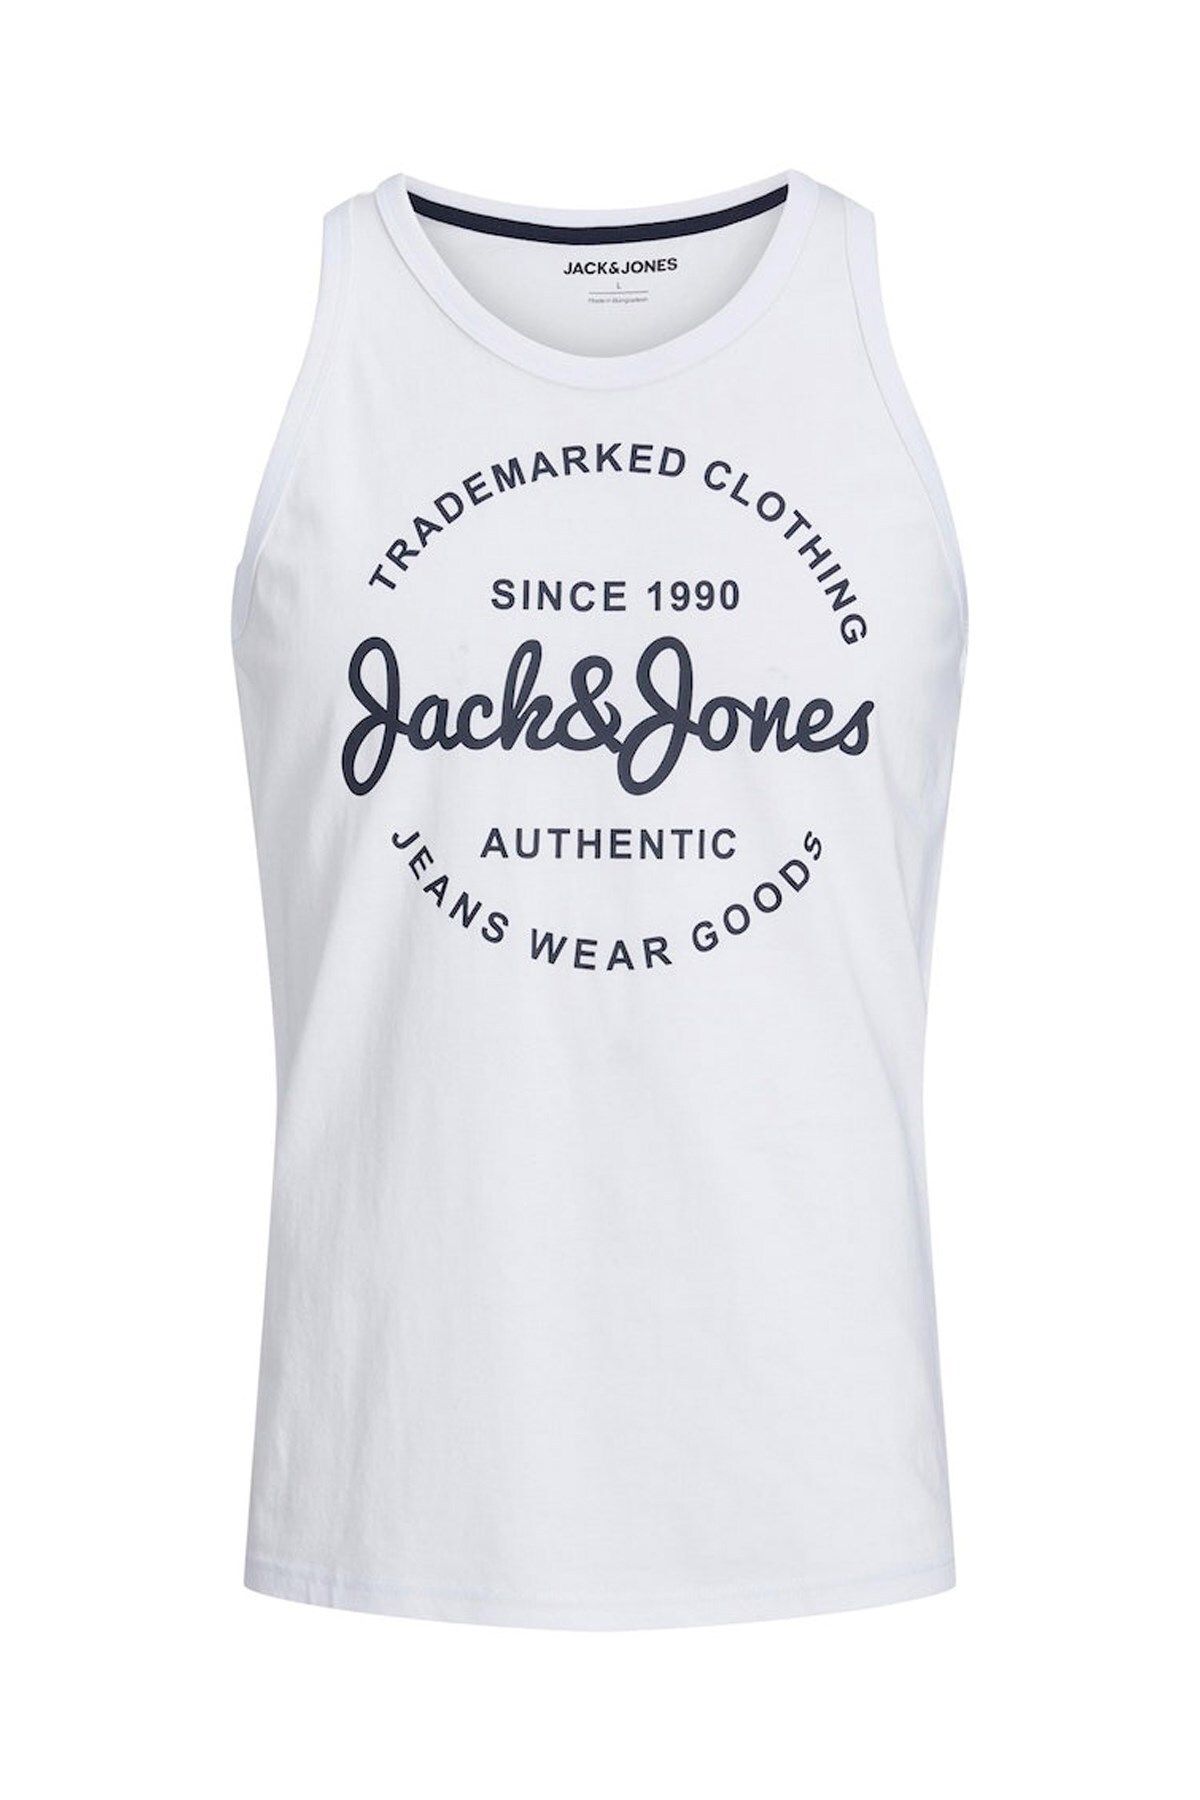 Jack & Jones Erkek Atlet 12248622